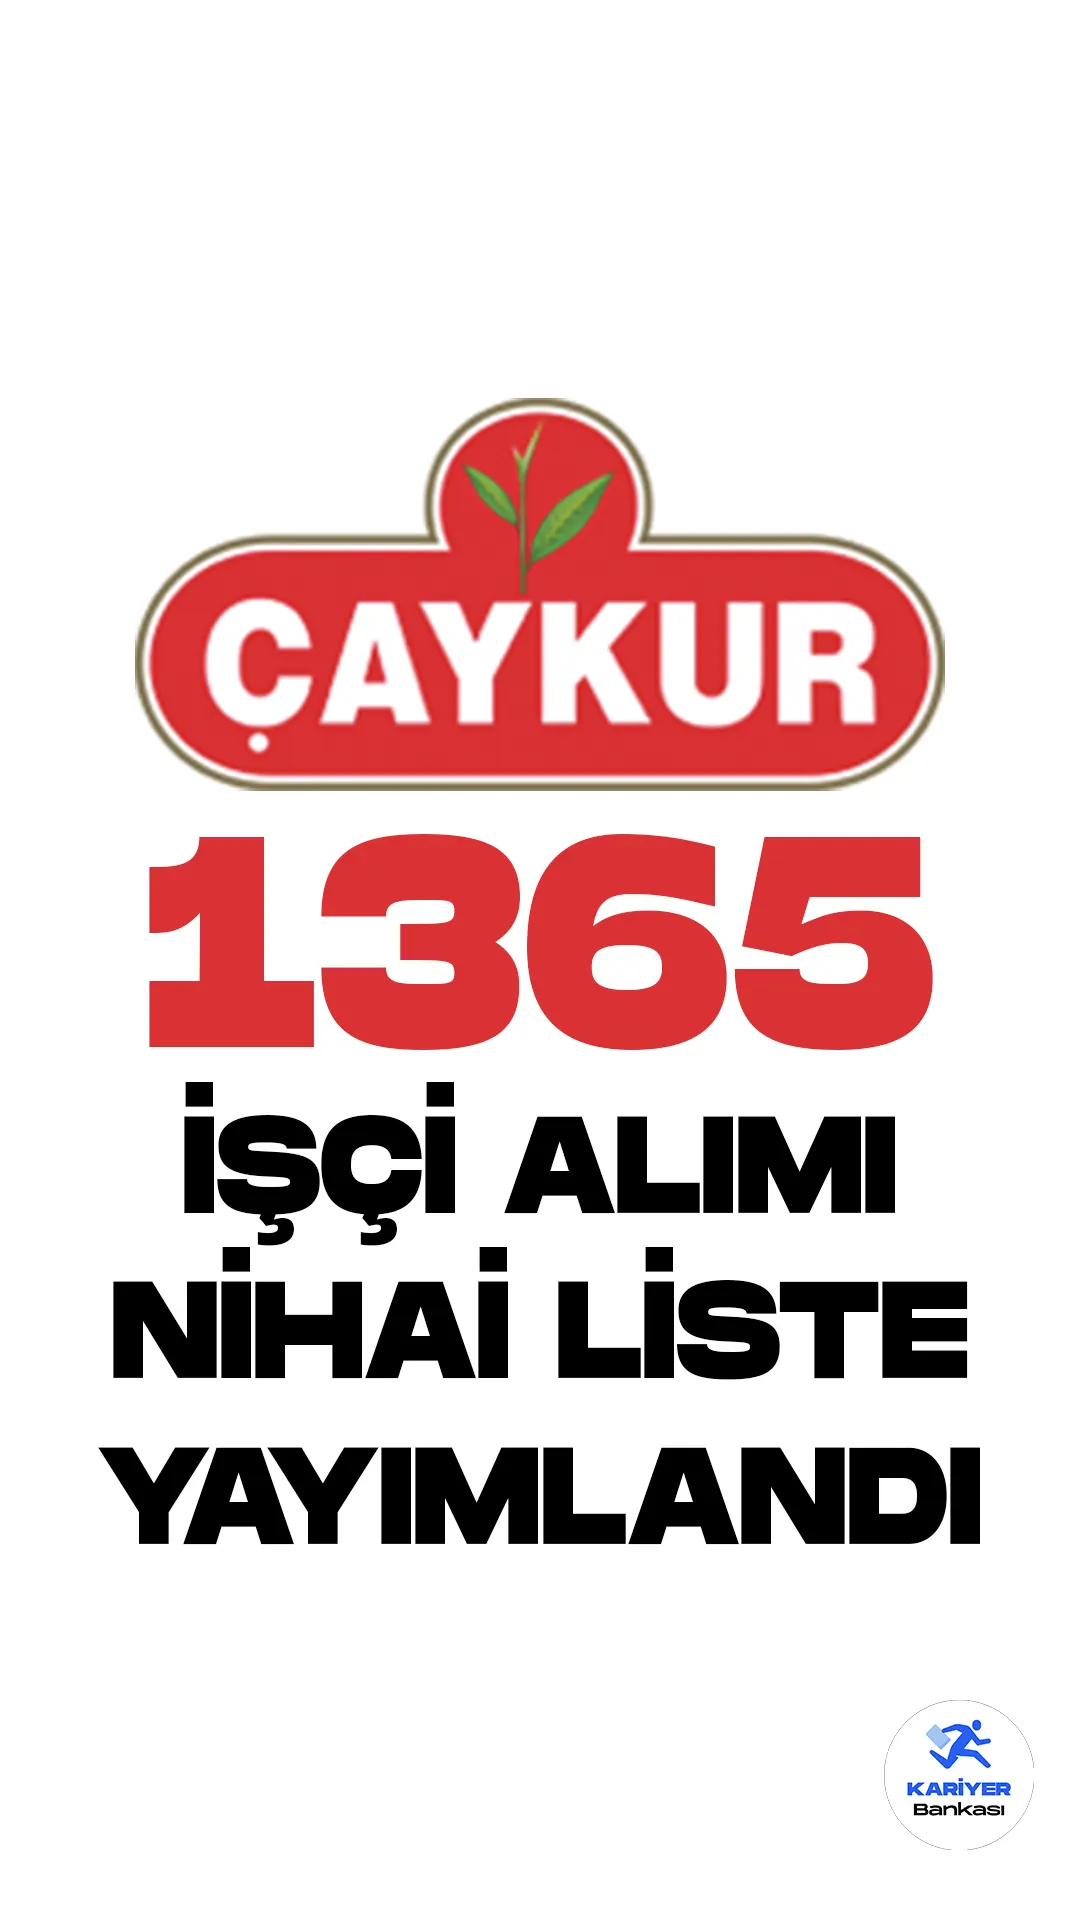 Çay İşletmeleri Genel Müdürlüğü (ÇAYKUR) 1365 işçi alımı nihai isim listesi yayımlandı.